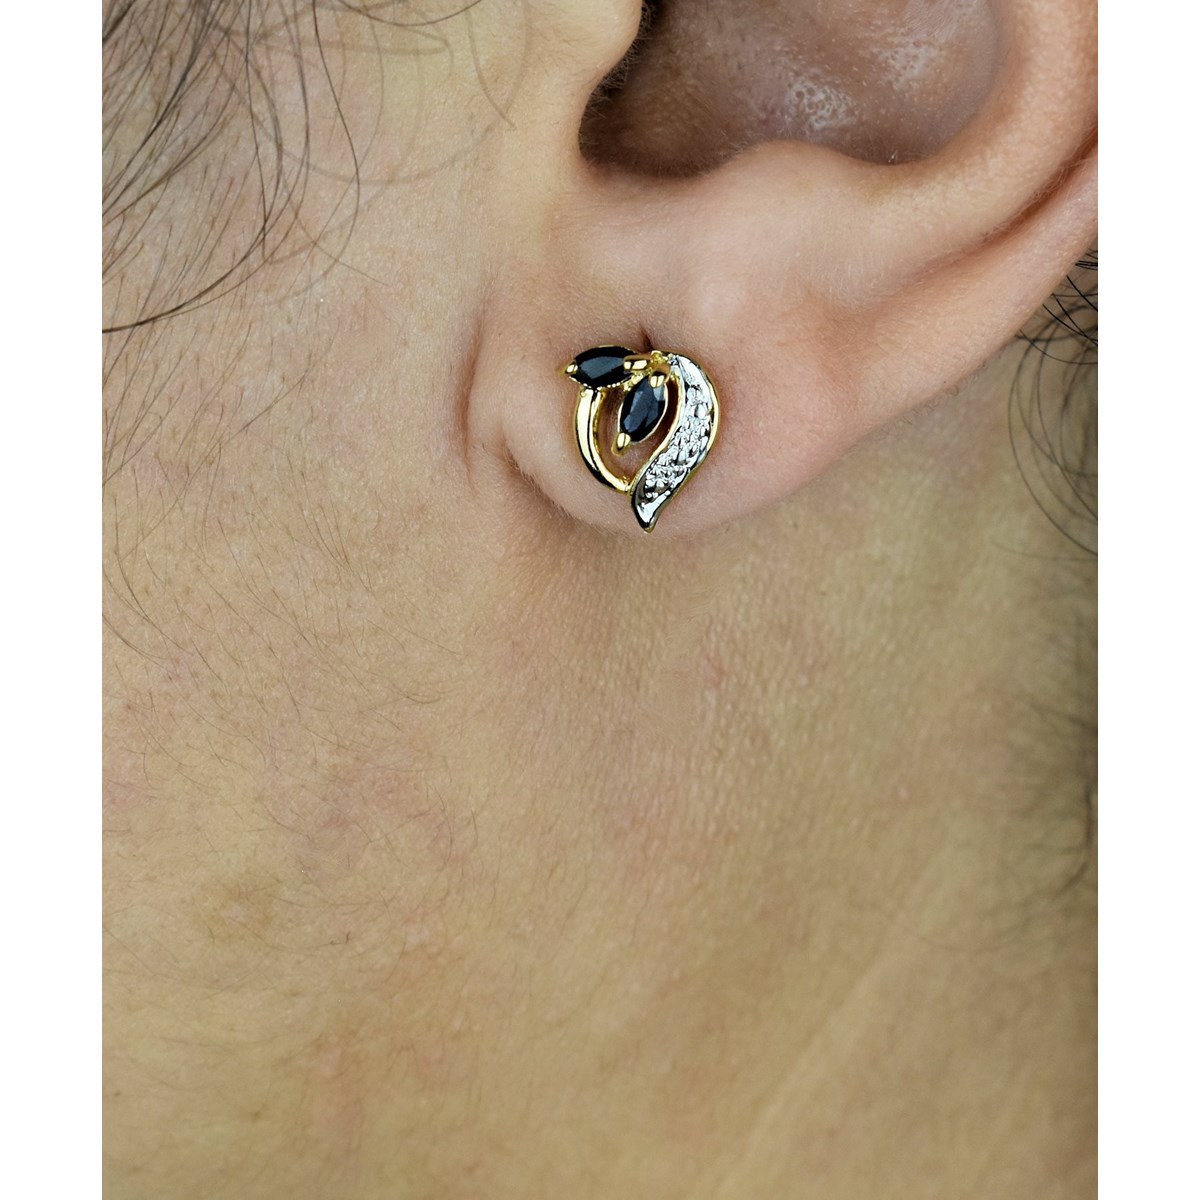 Boucles d'oreilles feuille de saphir pierre naturelle Plaqué OR 750 3 microns 2 tons - vue 2